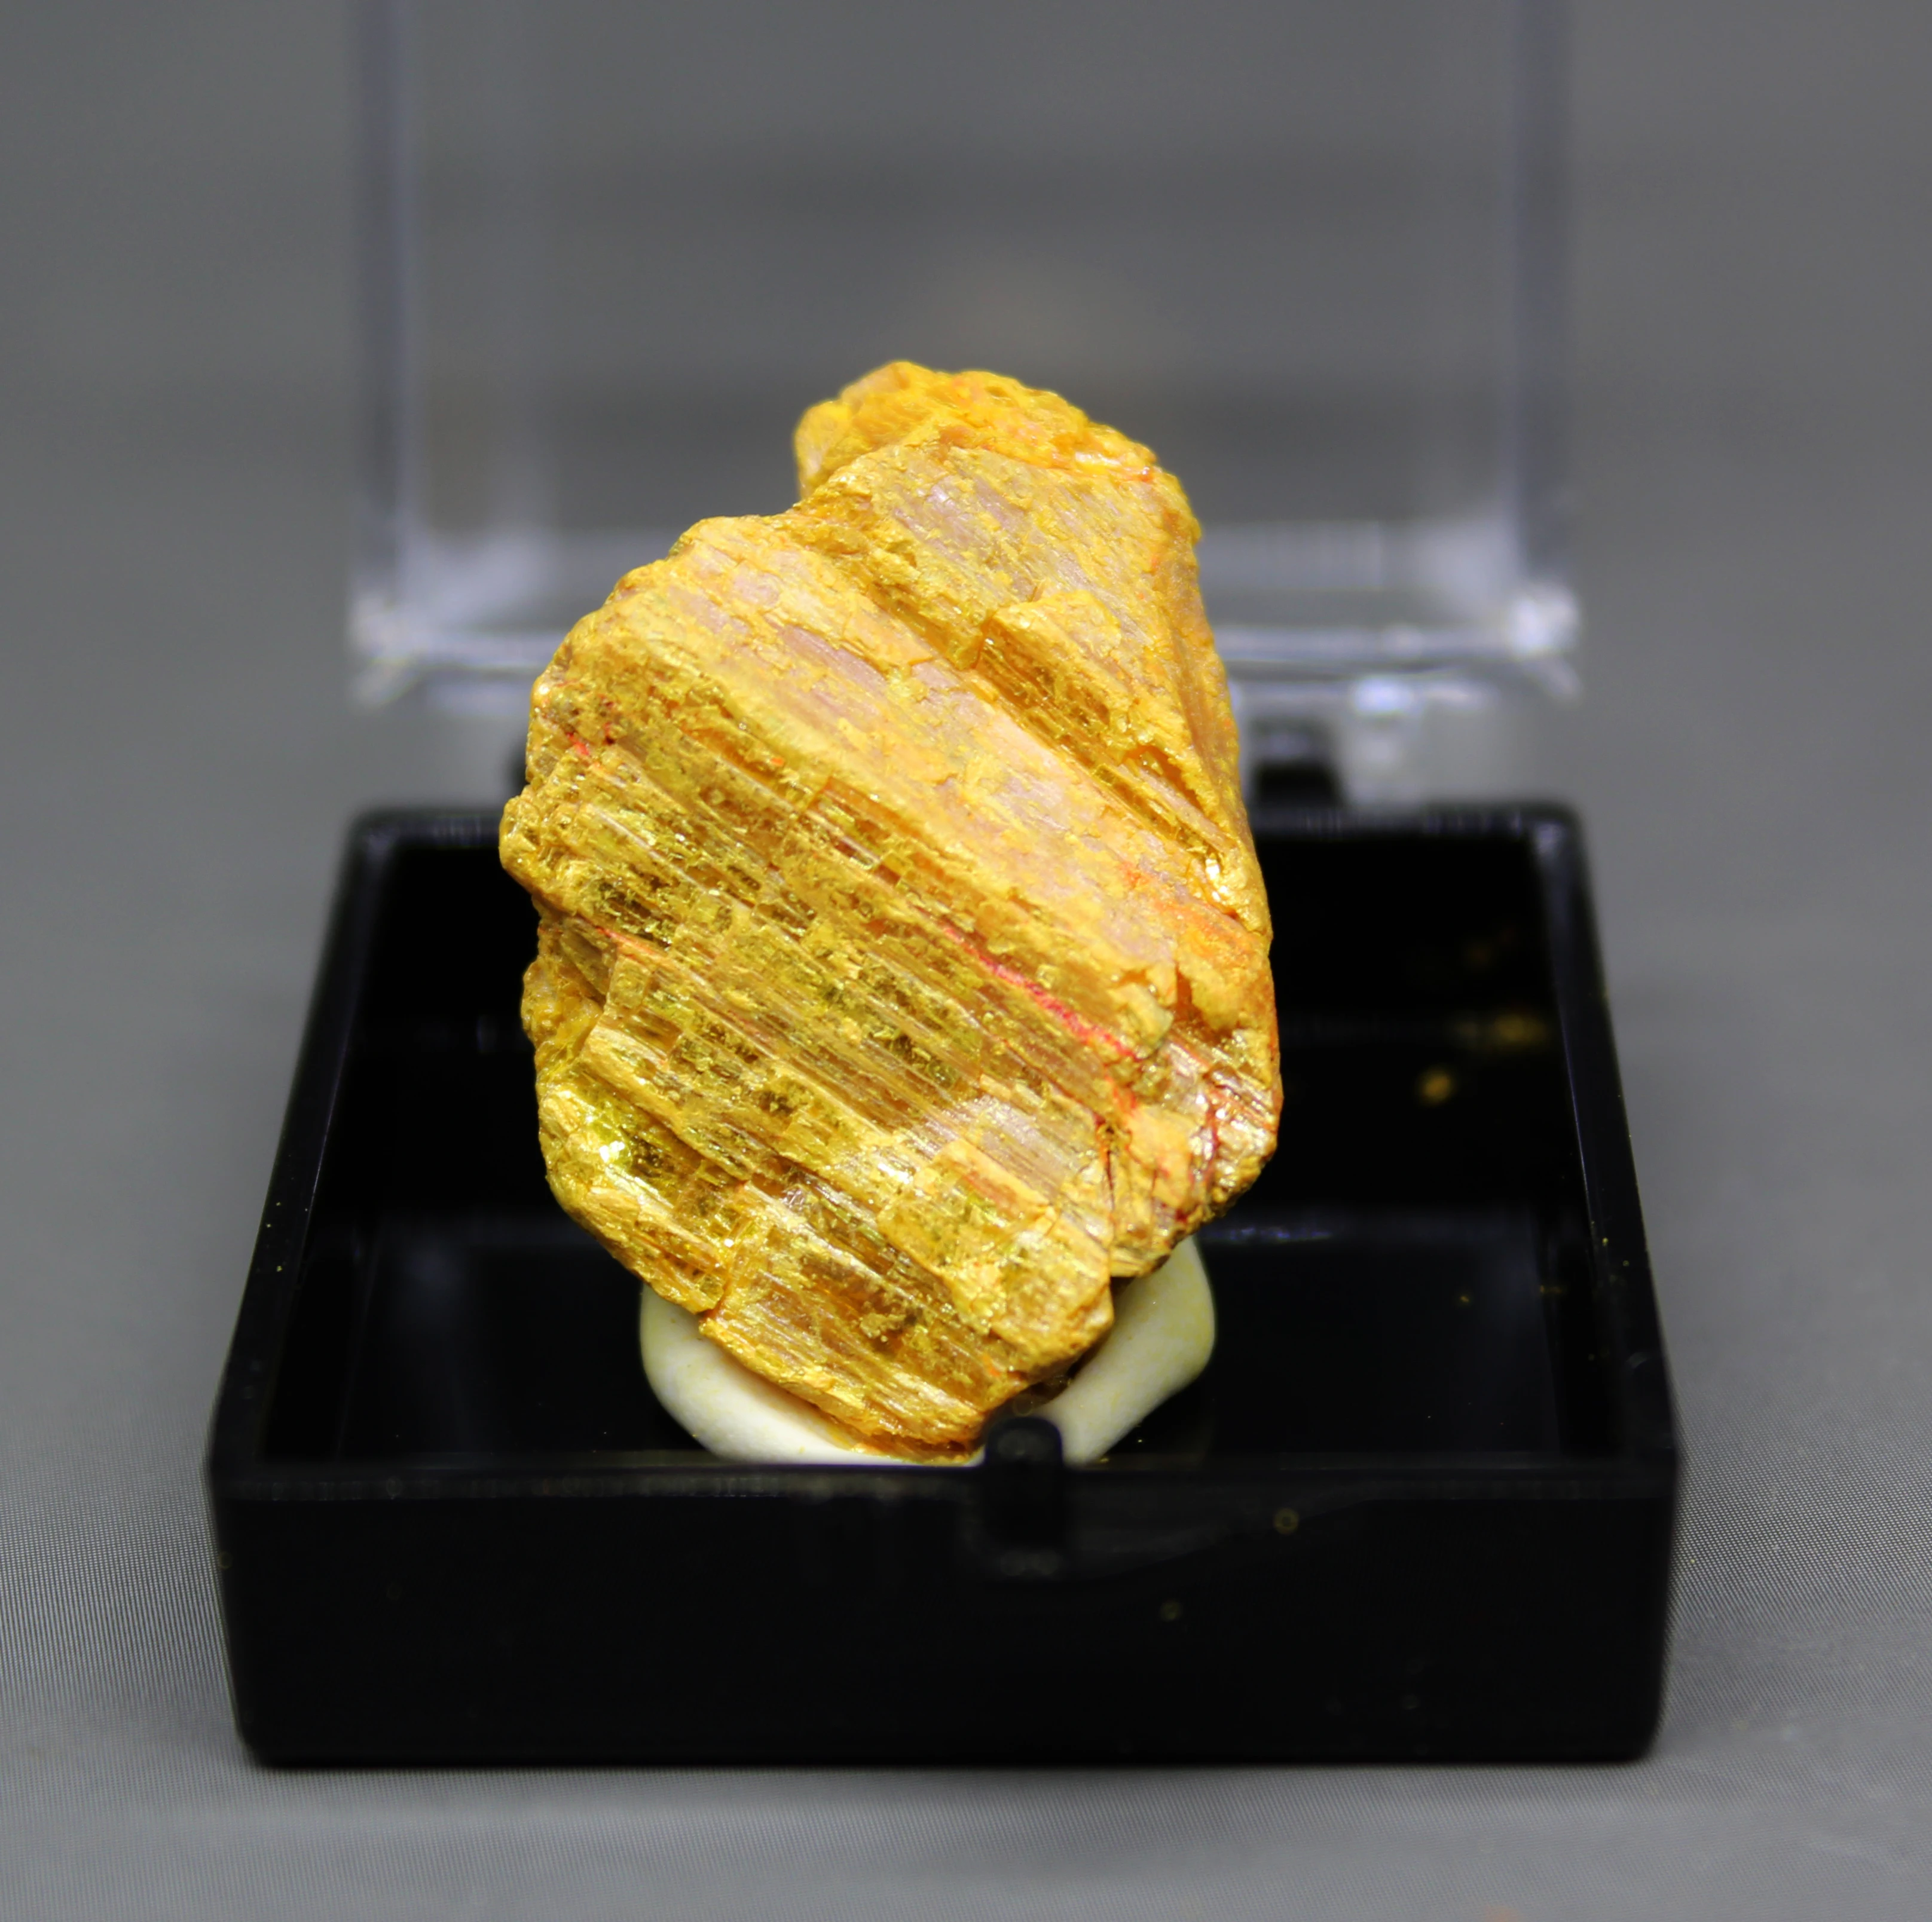 Natūralus orpiment Mineralinių egzemplioriai, Arseno sulfidas rūdos Kristalų mineralinės rūdos orpimentcollection egzempliorių dėžutės dydis 3.4 cm